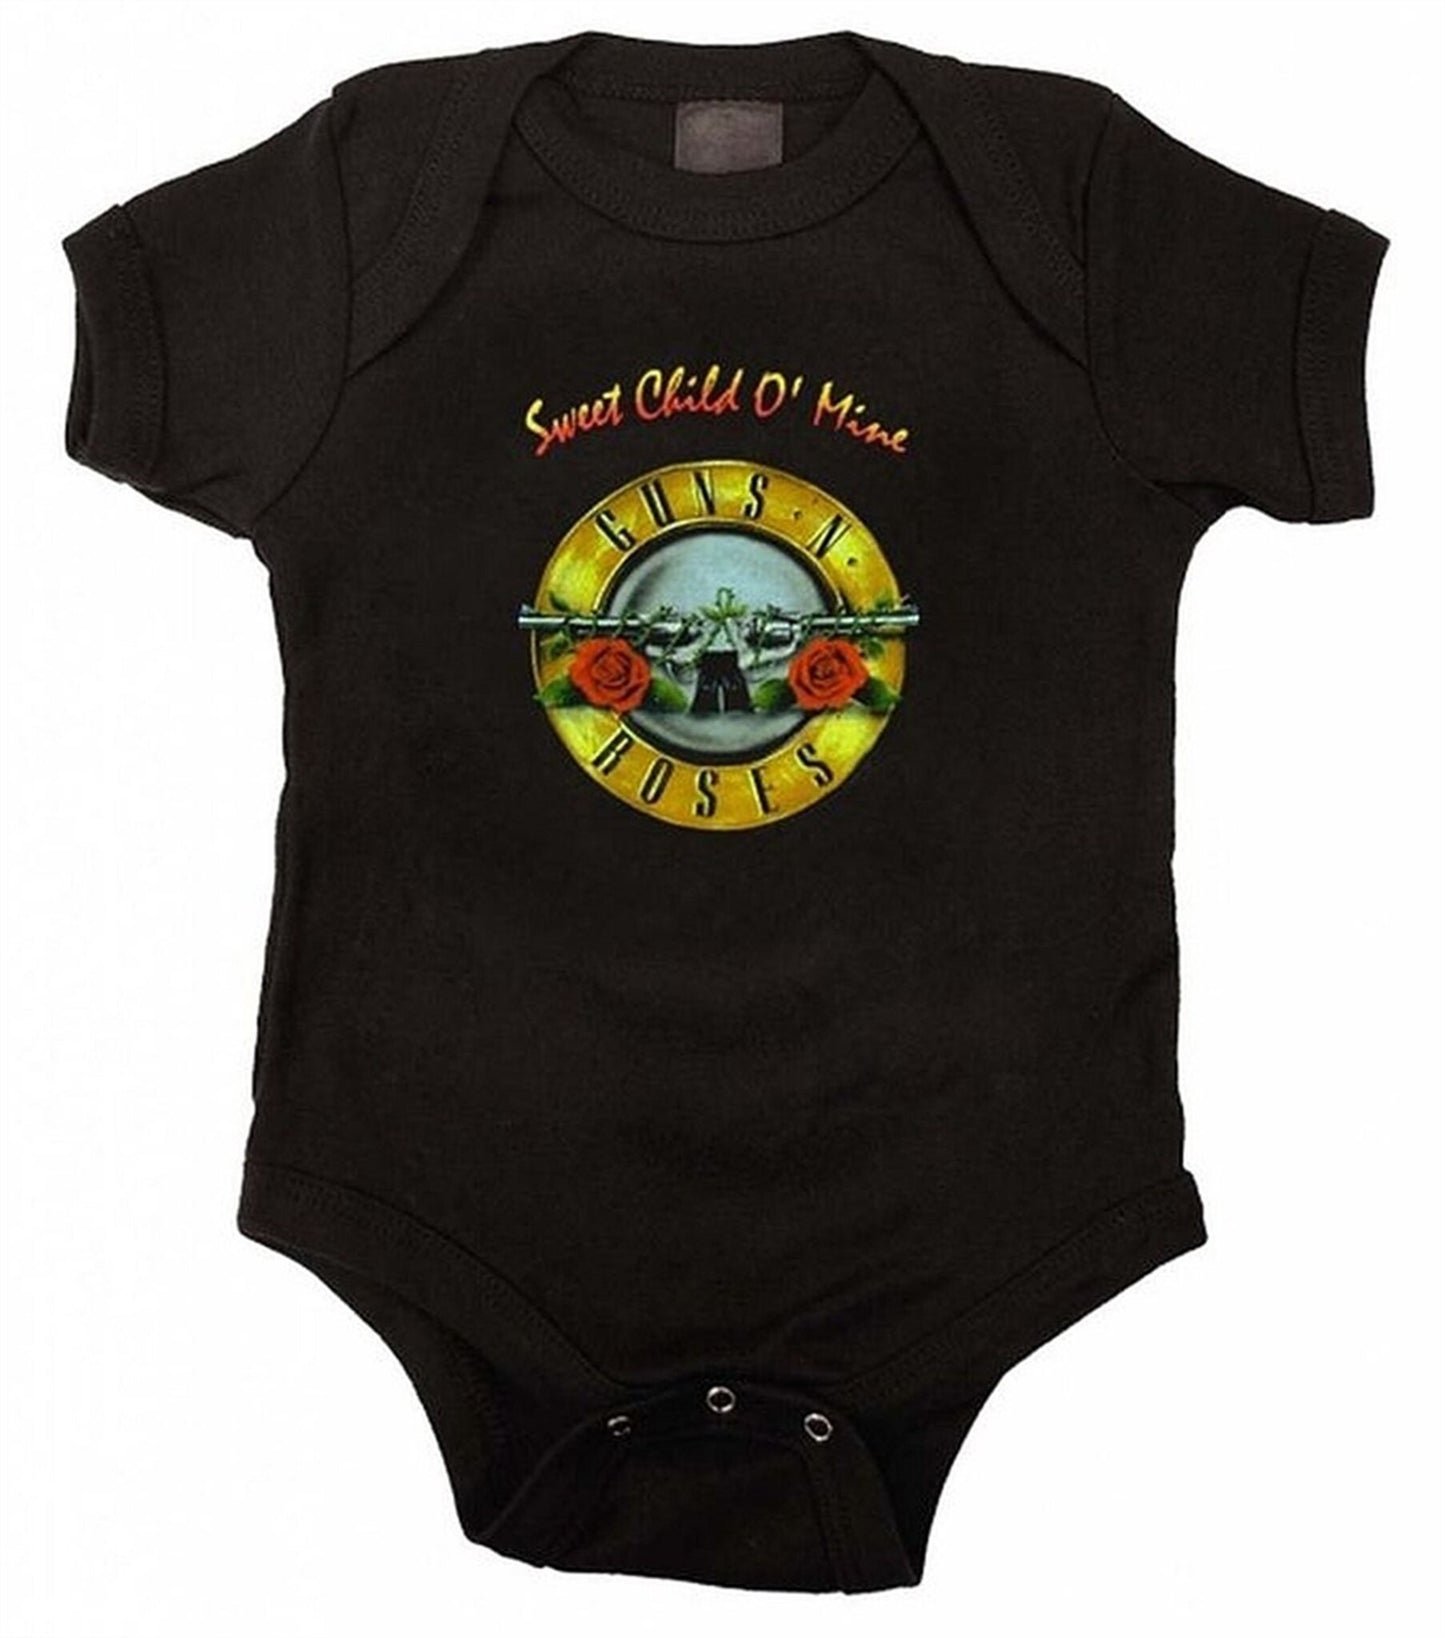 Guns N Roses Sweet Child O' Mine Infant Baby Romper Onesie